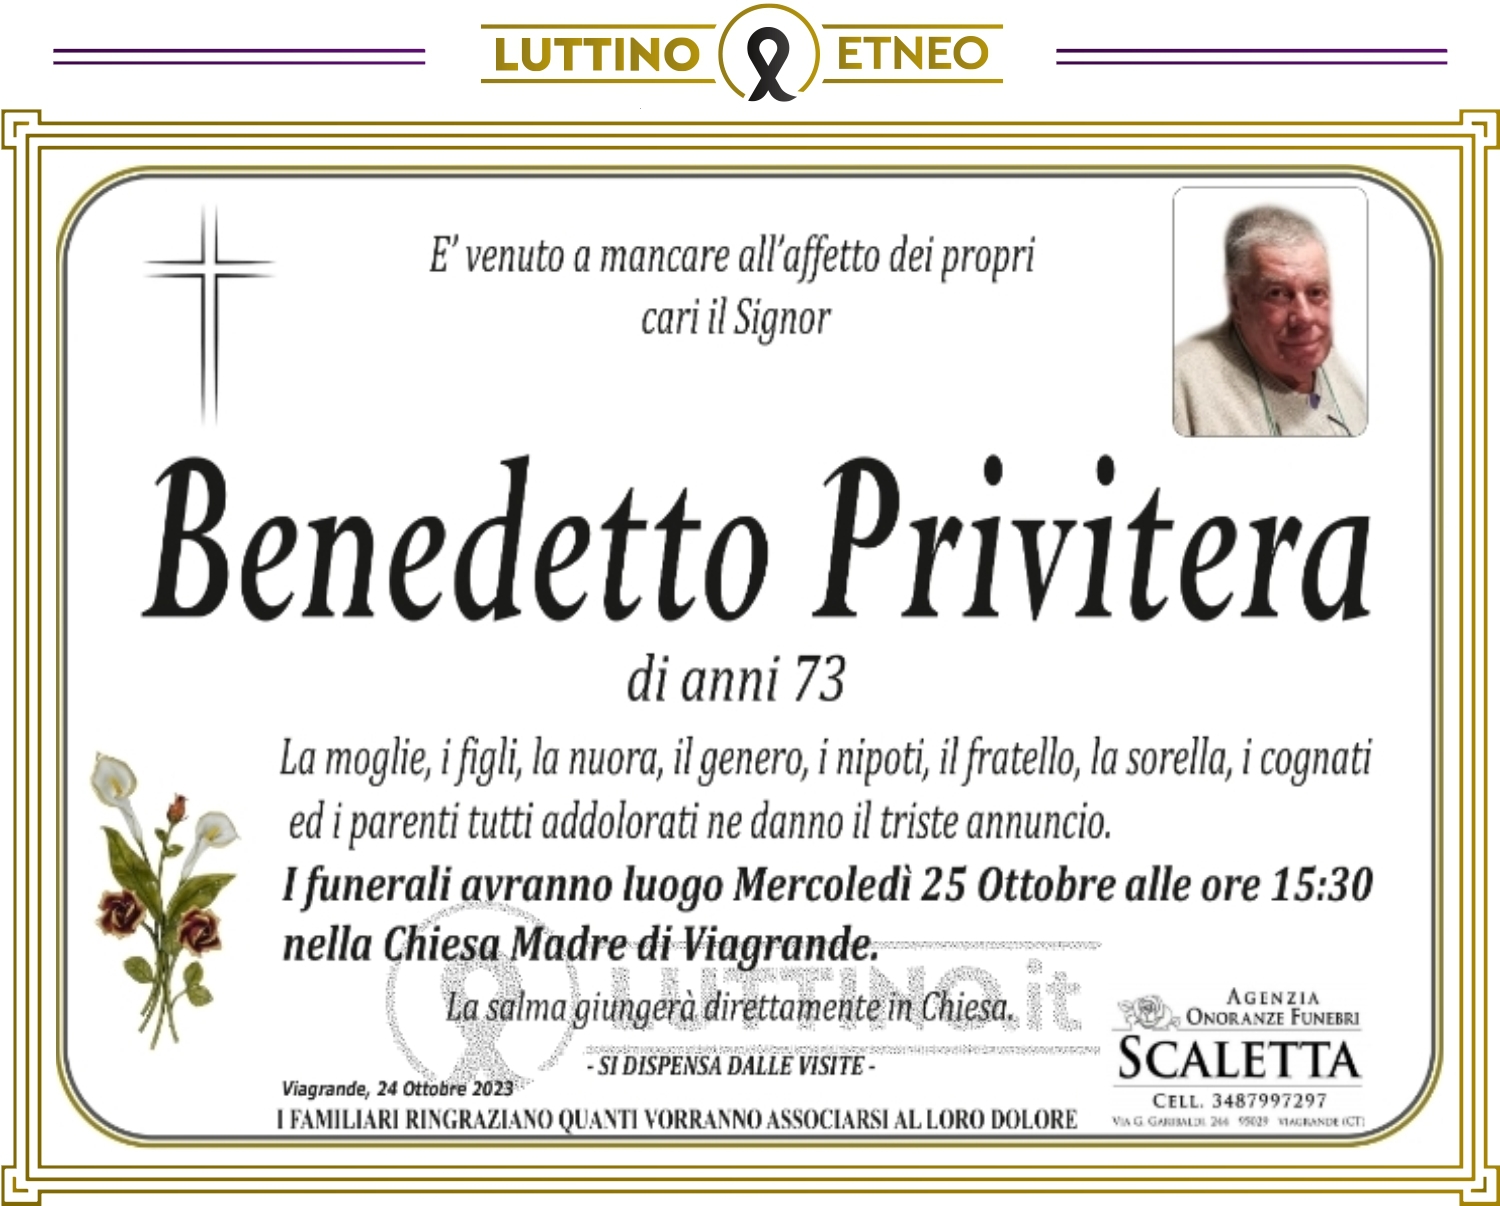 Benedetto Privitera